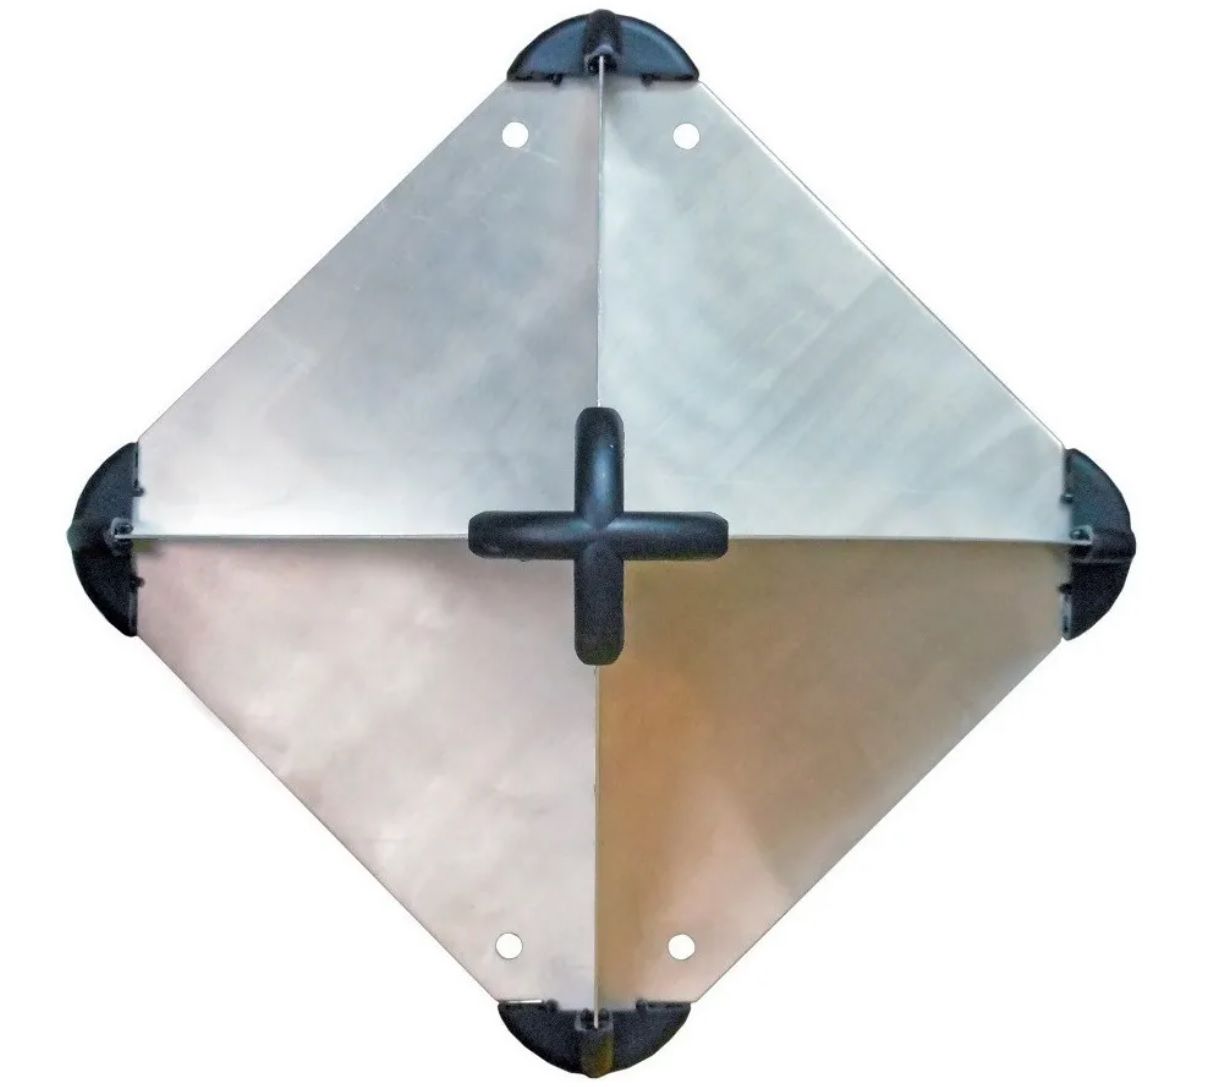 Defletor (Refletor) de Radar em Alumínio para Barcos, Lanchas e Veleiros